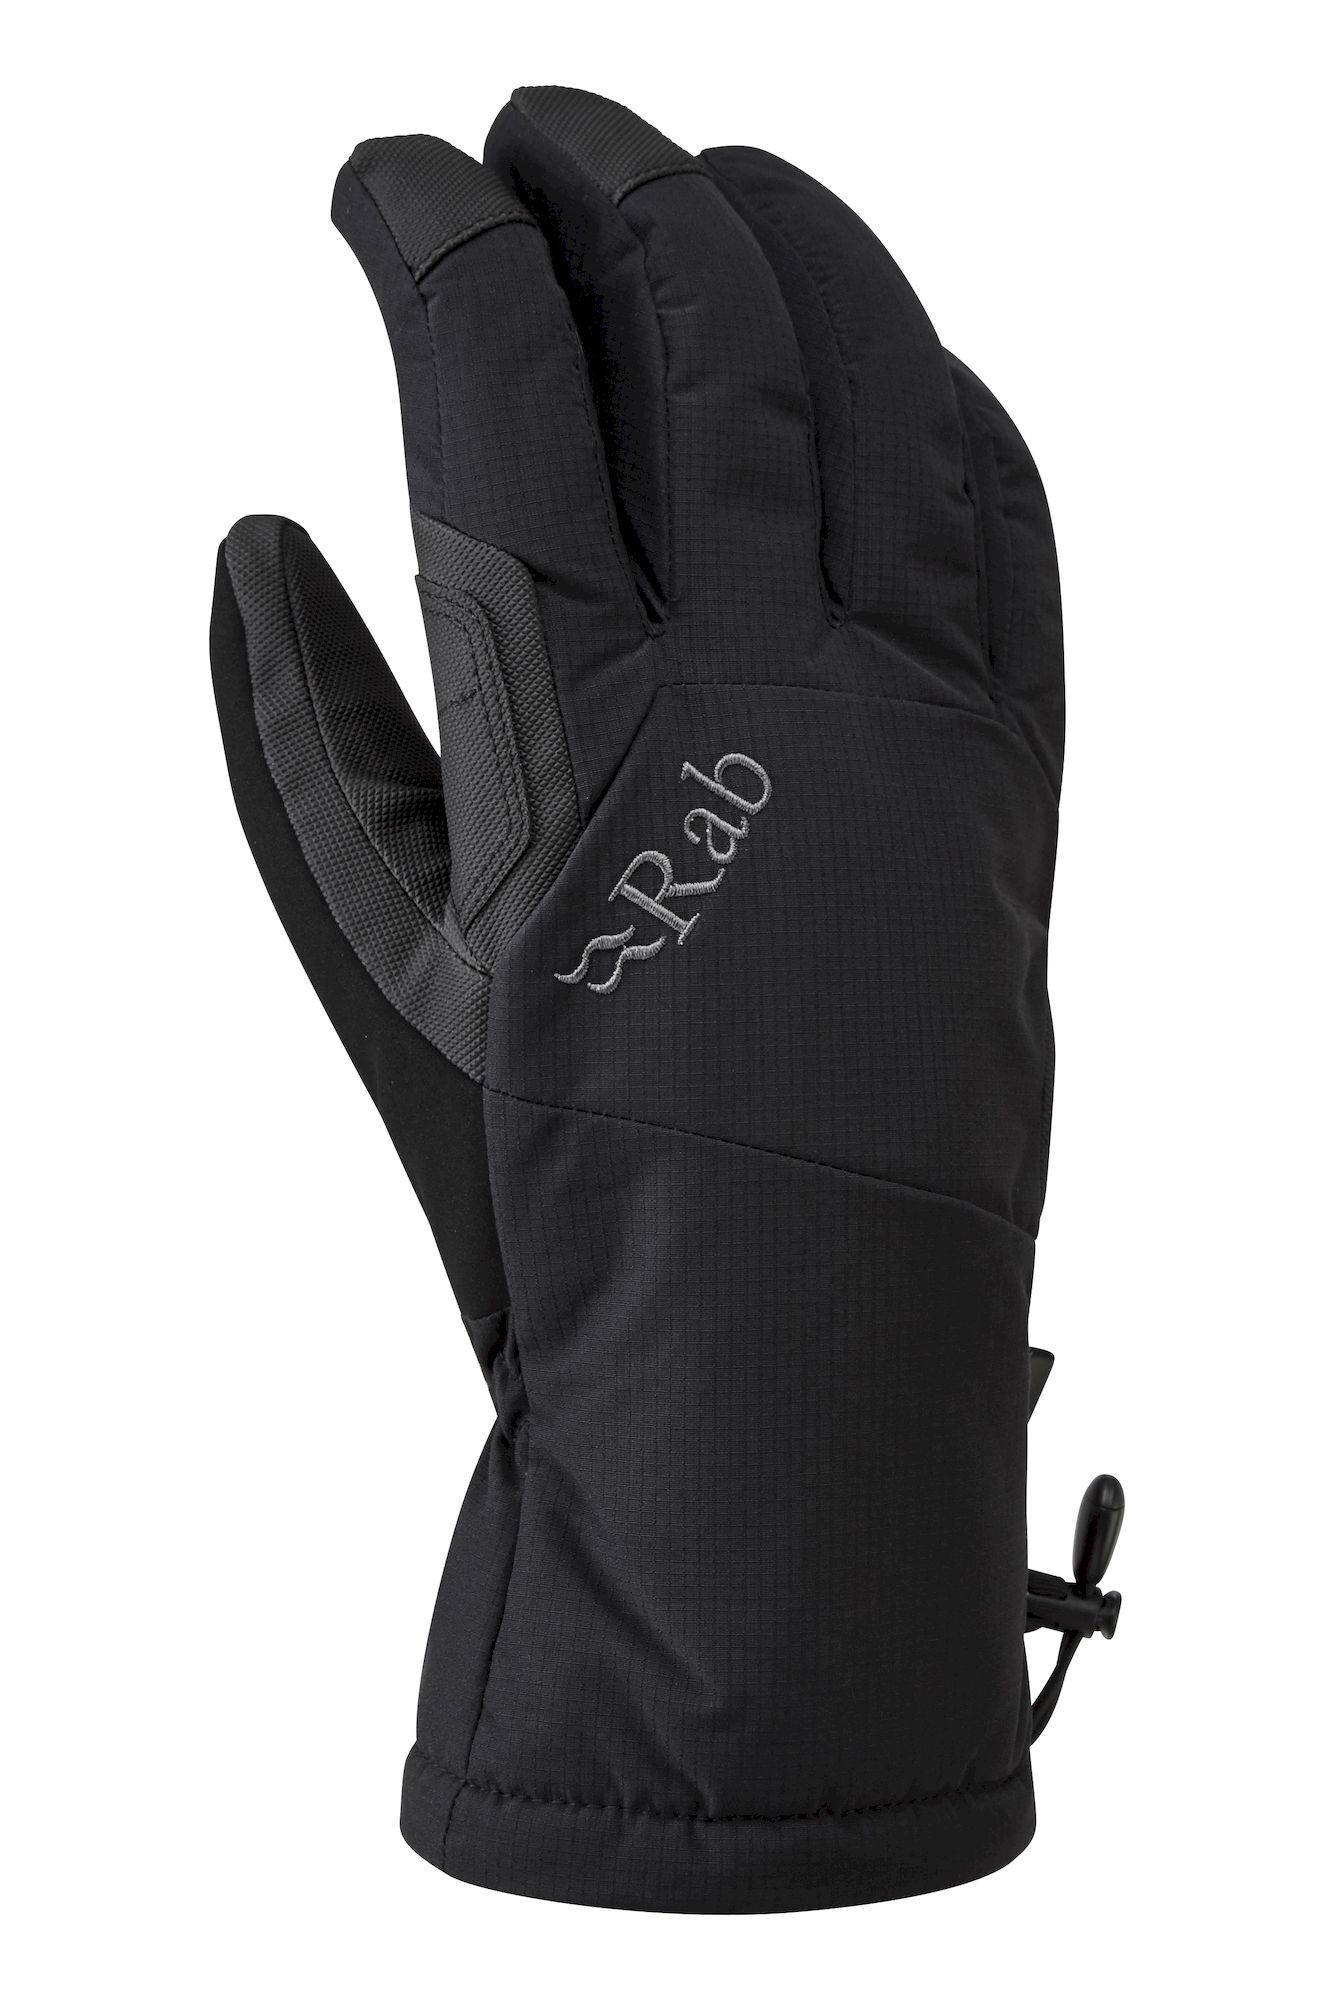 Rab Storm Gloves - Skihandschuhe - Herren | Hardloop